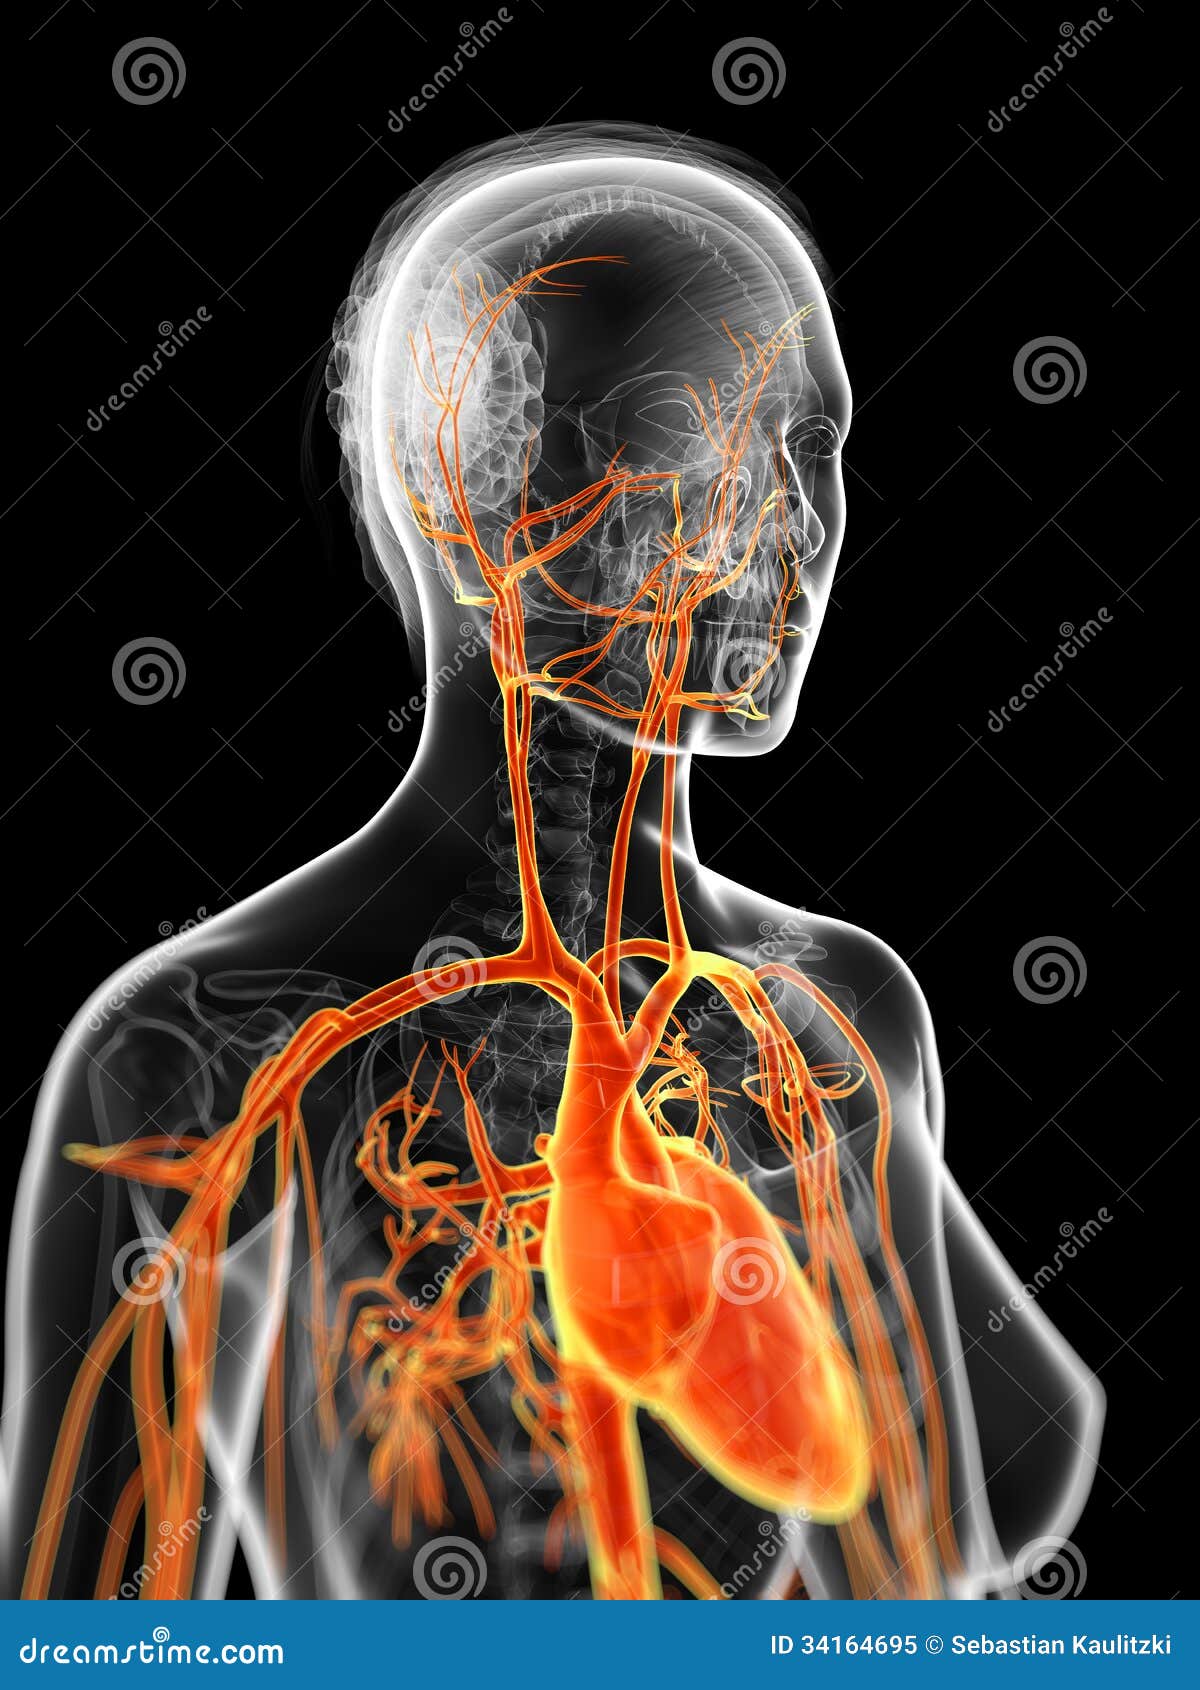 the female vascular system